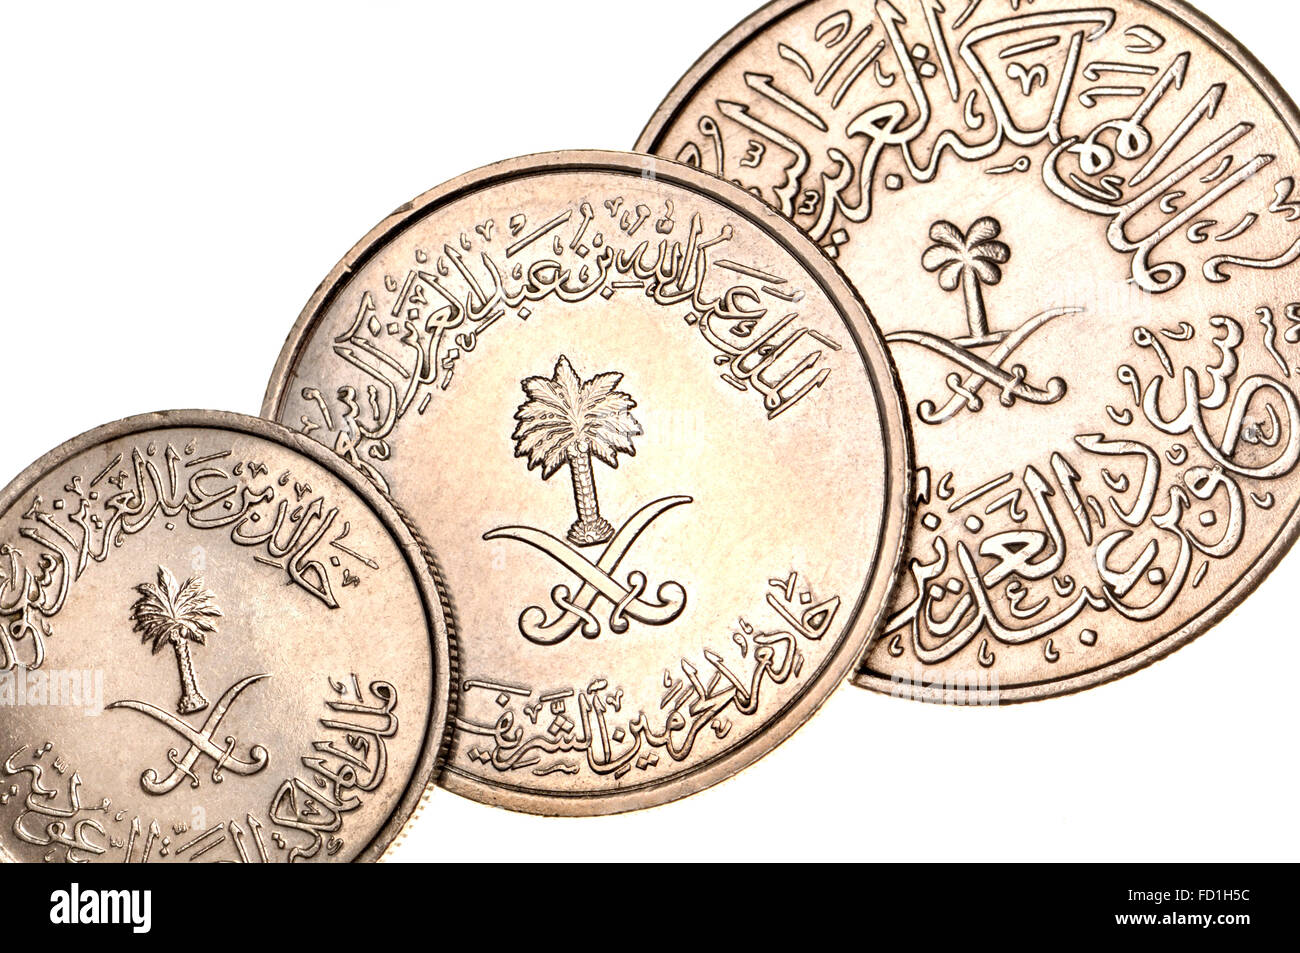 Münzen von Saudi Arabien zeigen östliche arabische Schrift und Ziffern, Palme und gekreuzte Schwerter Stockfoto